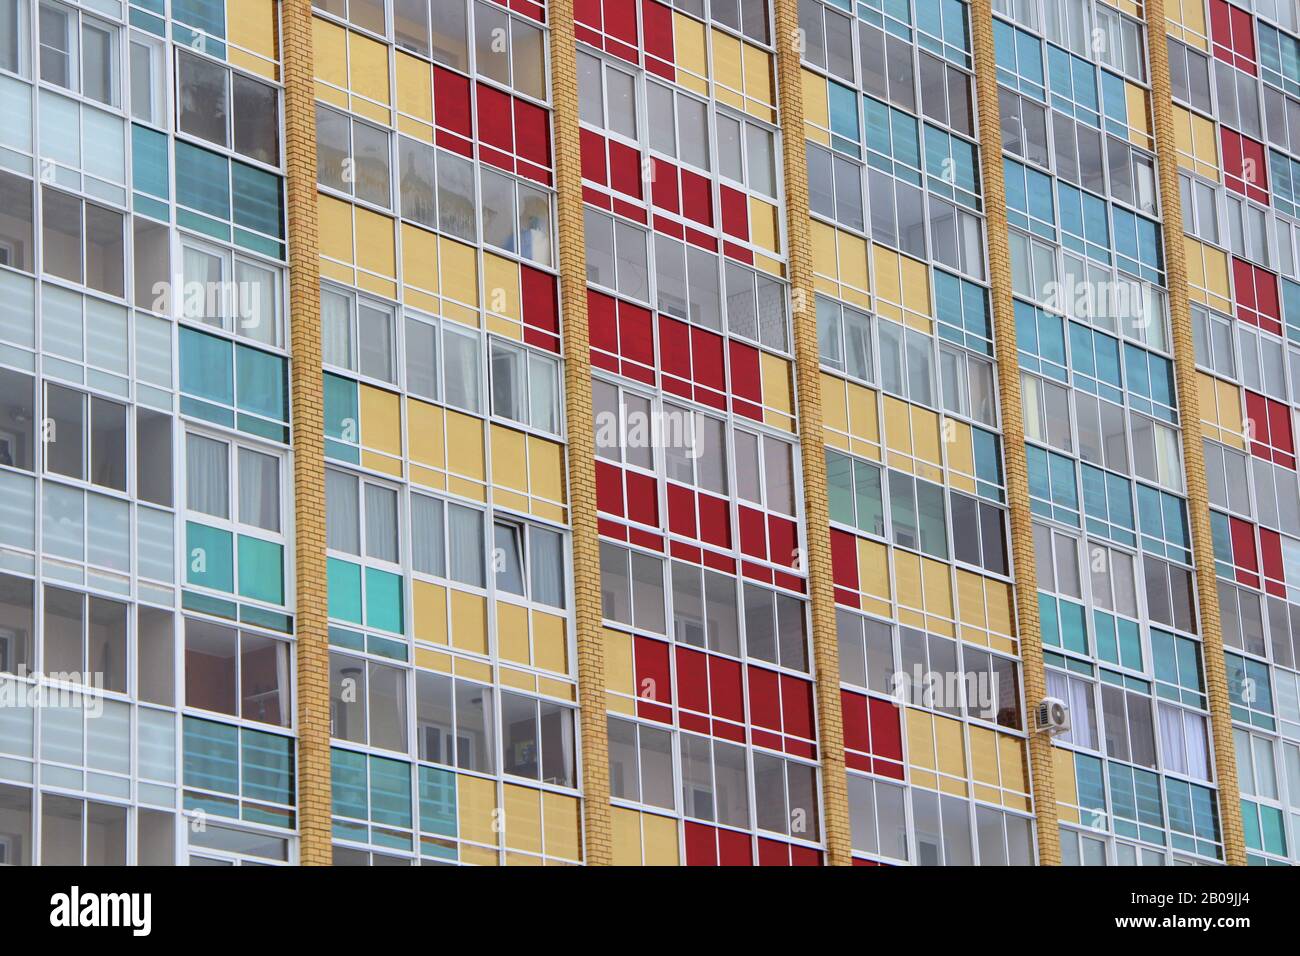 Mur d'une maison moderne en briques carrelées avec des rangées de fenêtres et des vitraux multicolores. Stocker la photo pour le Web, l'impression, l'arrière-plan et le fond d'écran, avec un espace vide pour le texte Banque D'Images